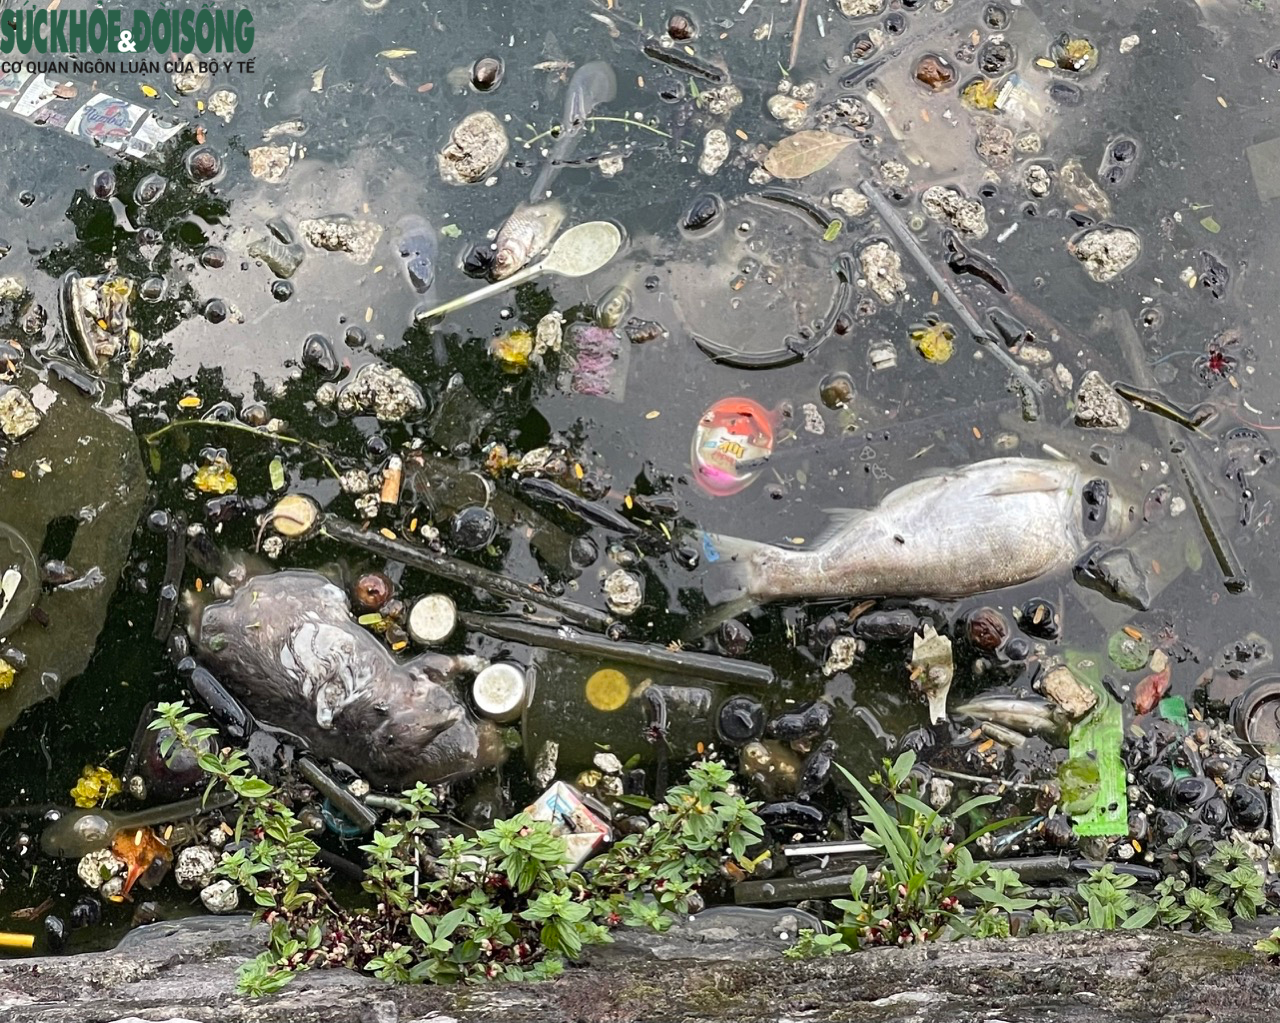 Xác cá chết, rác thải bốc mùi hôi thối một góc Hồ Tây - Ảnh 9.